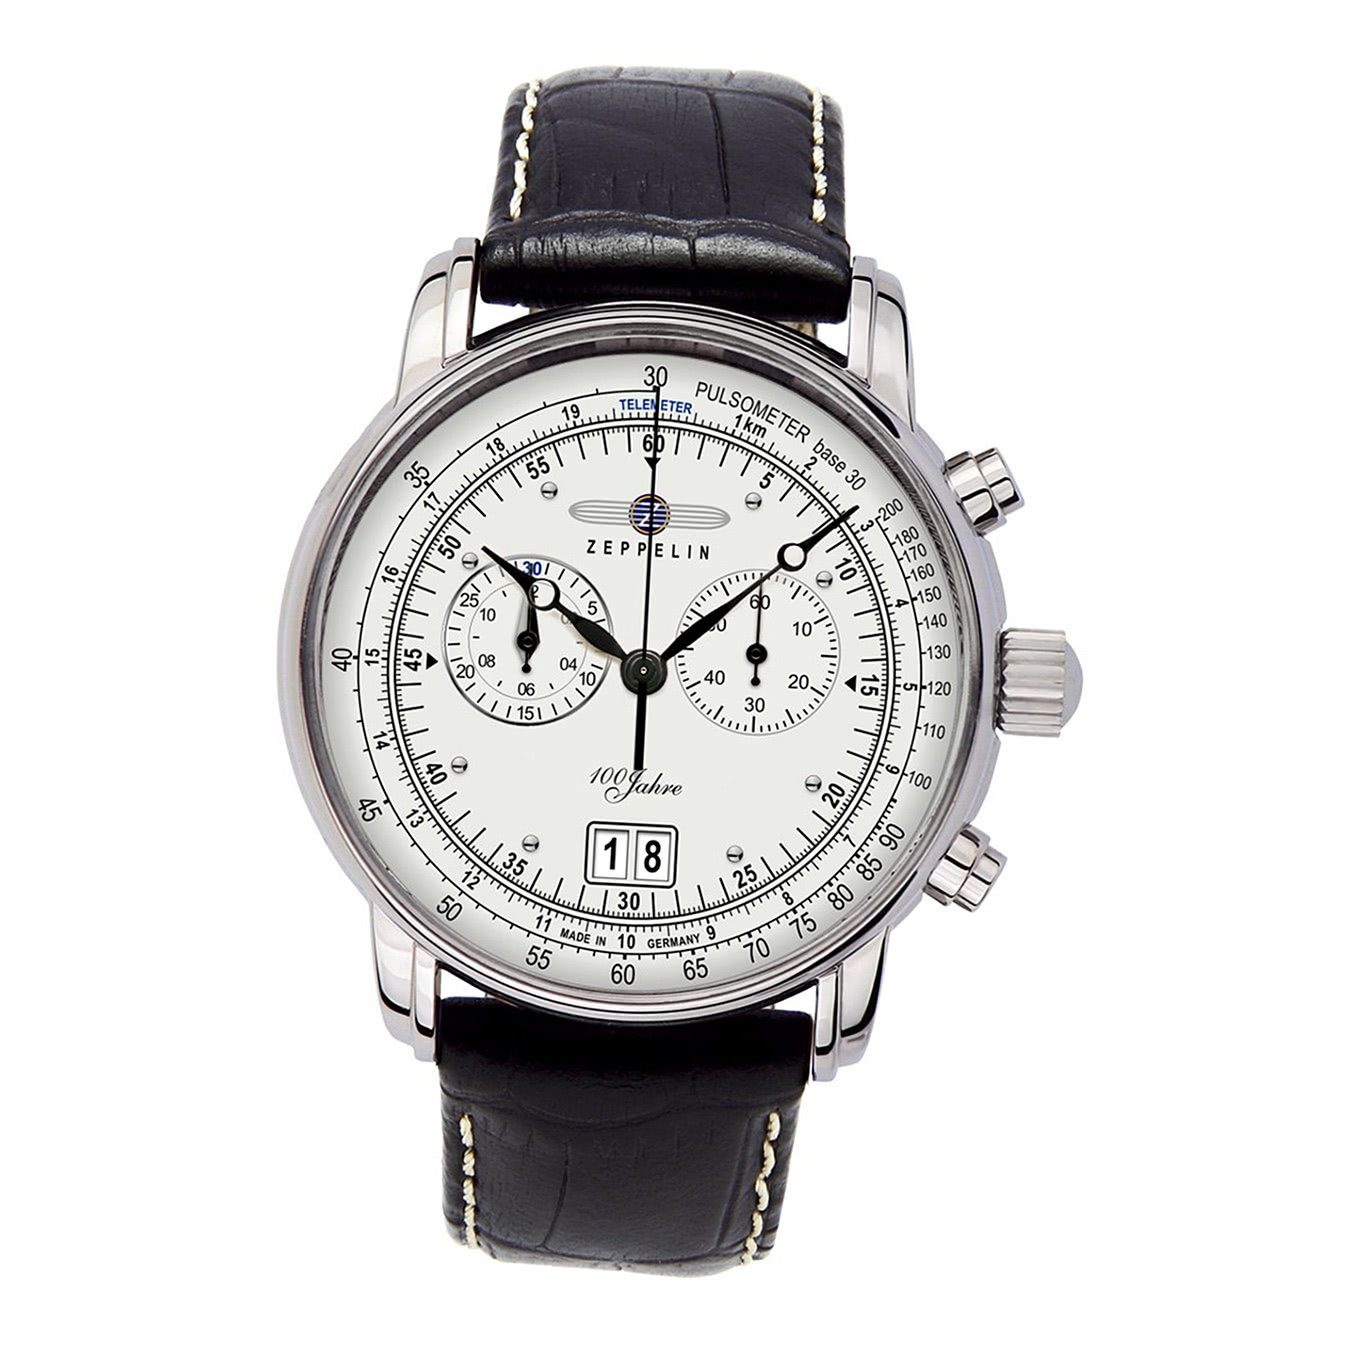 ZEPPELIN Chronograph Zeppelin Herren Uhr Elegant Z7690/1 Leder, (Chronograph), Herren Armbanduhr rund, groß (ca. 43mm), Lederarmband schwarz